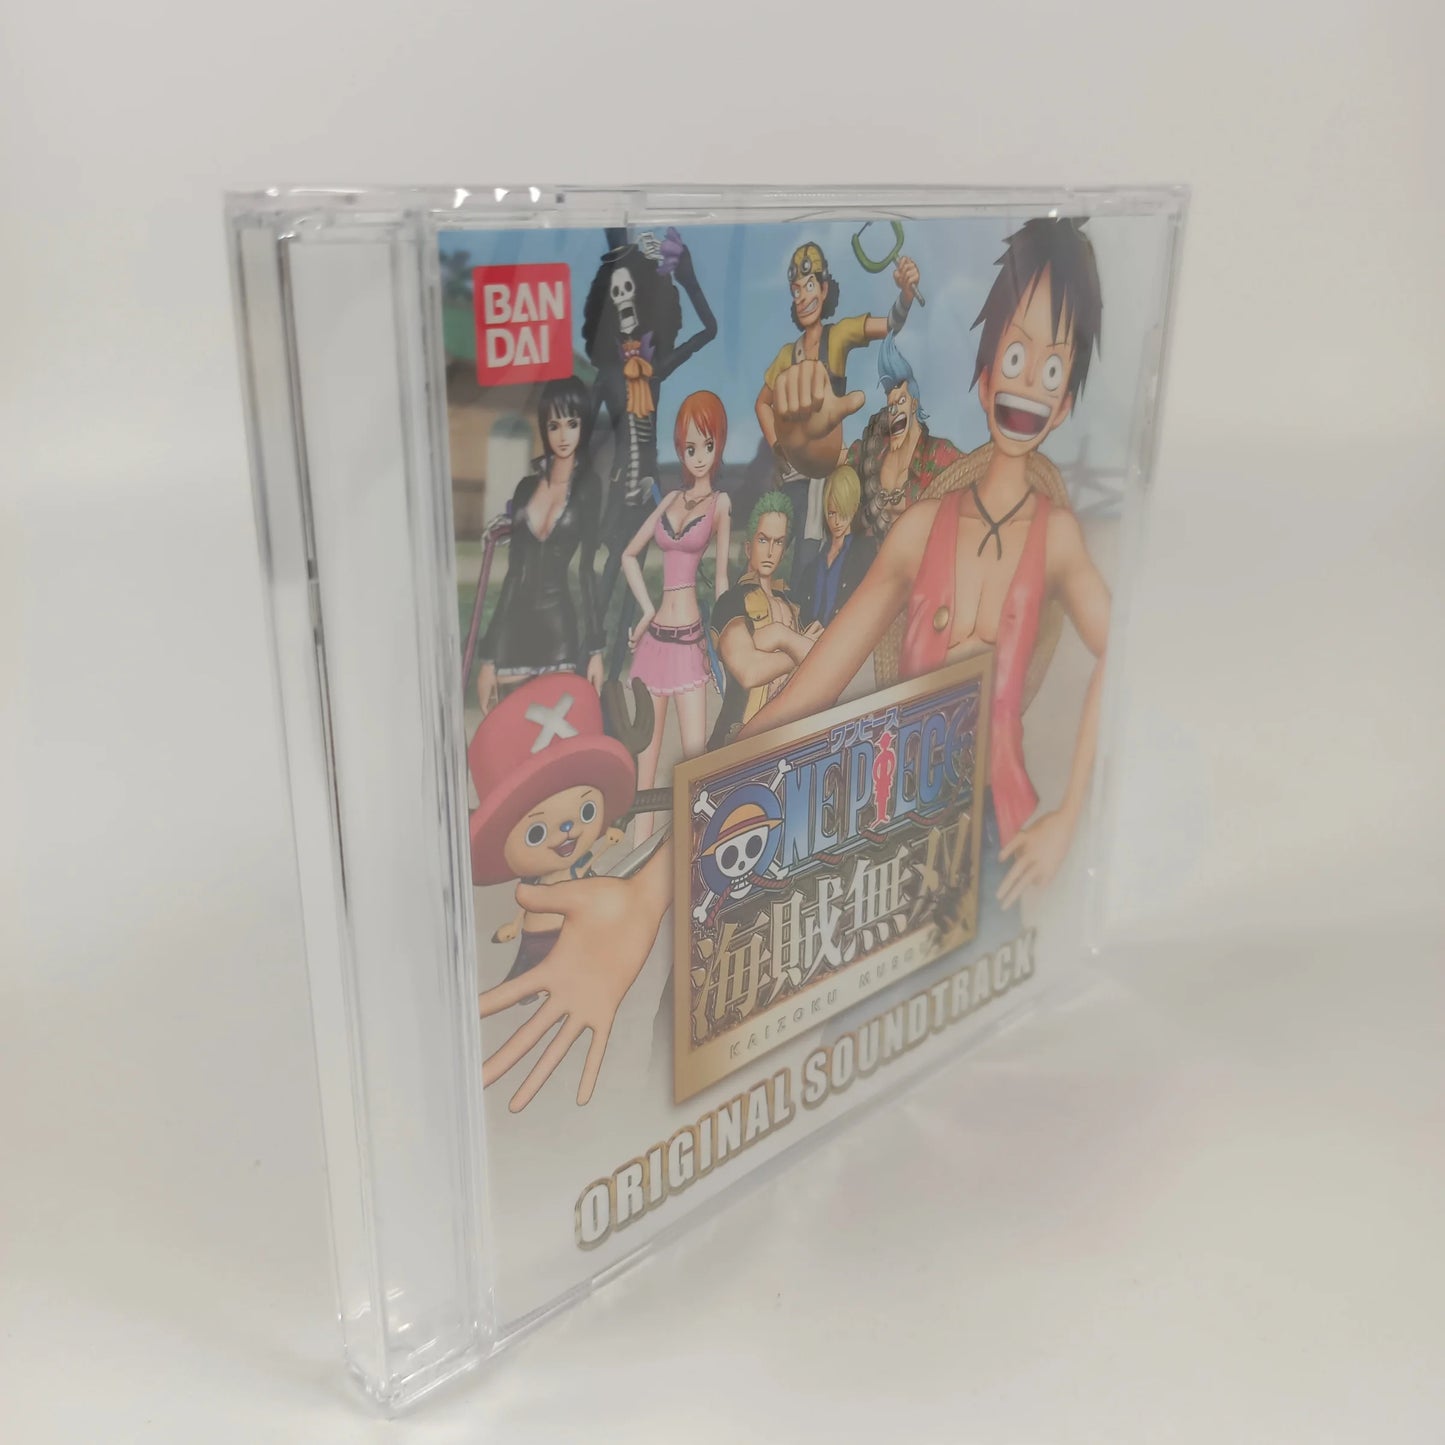 OST de One Piece: Pirate Warriors